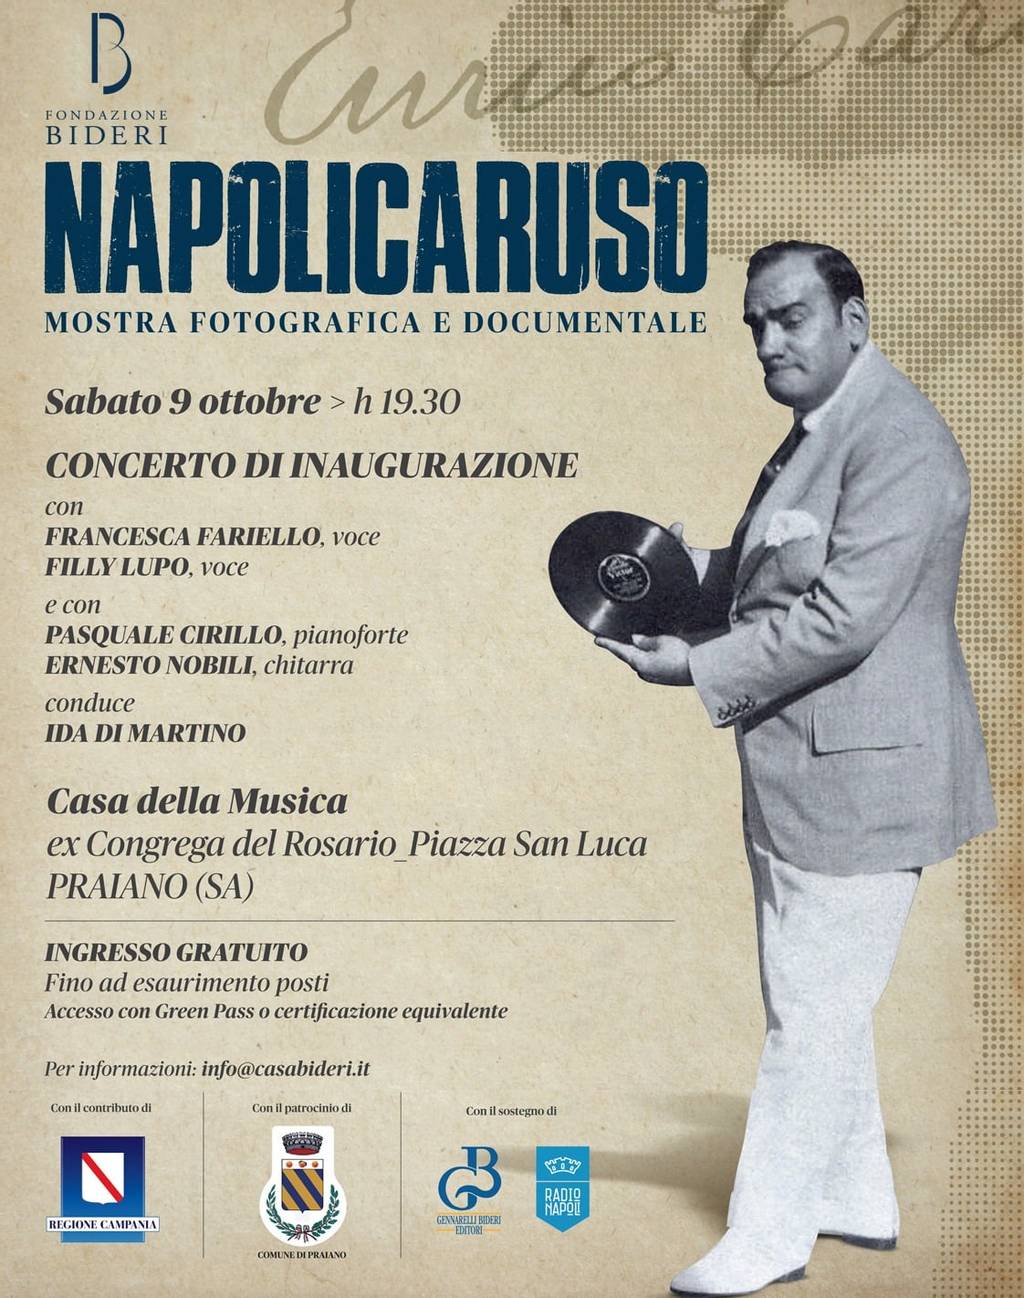 NapoliCaruso, concerto di inaugurazione